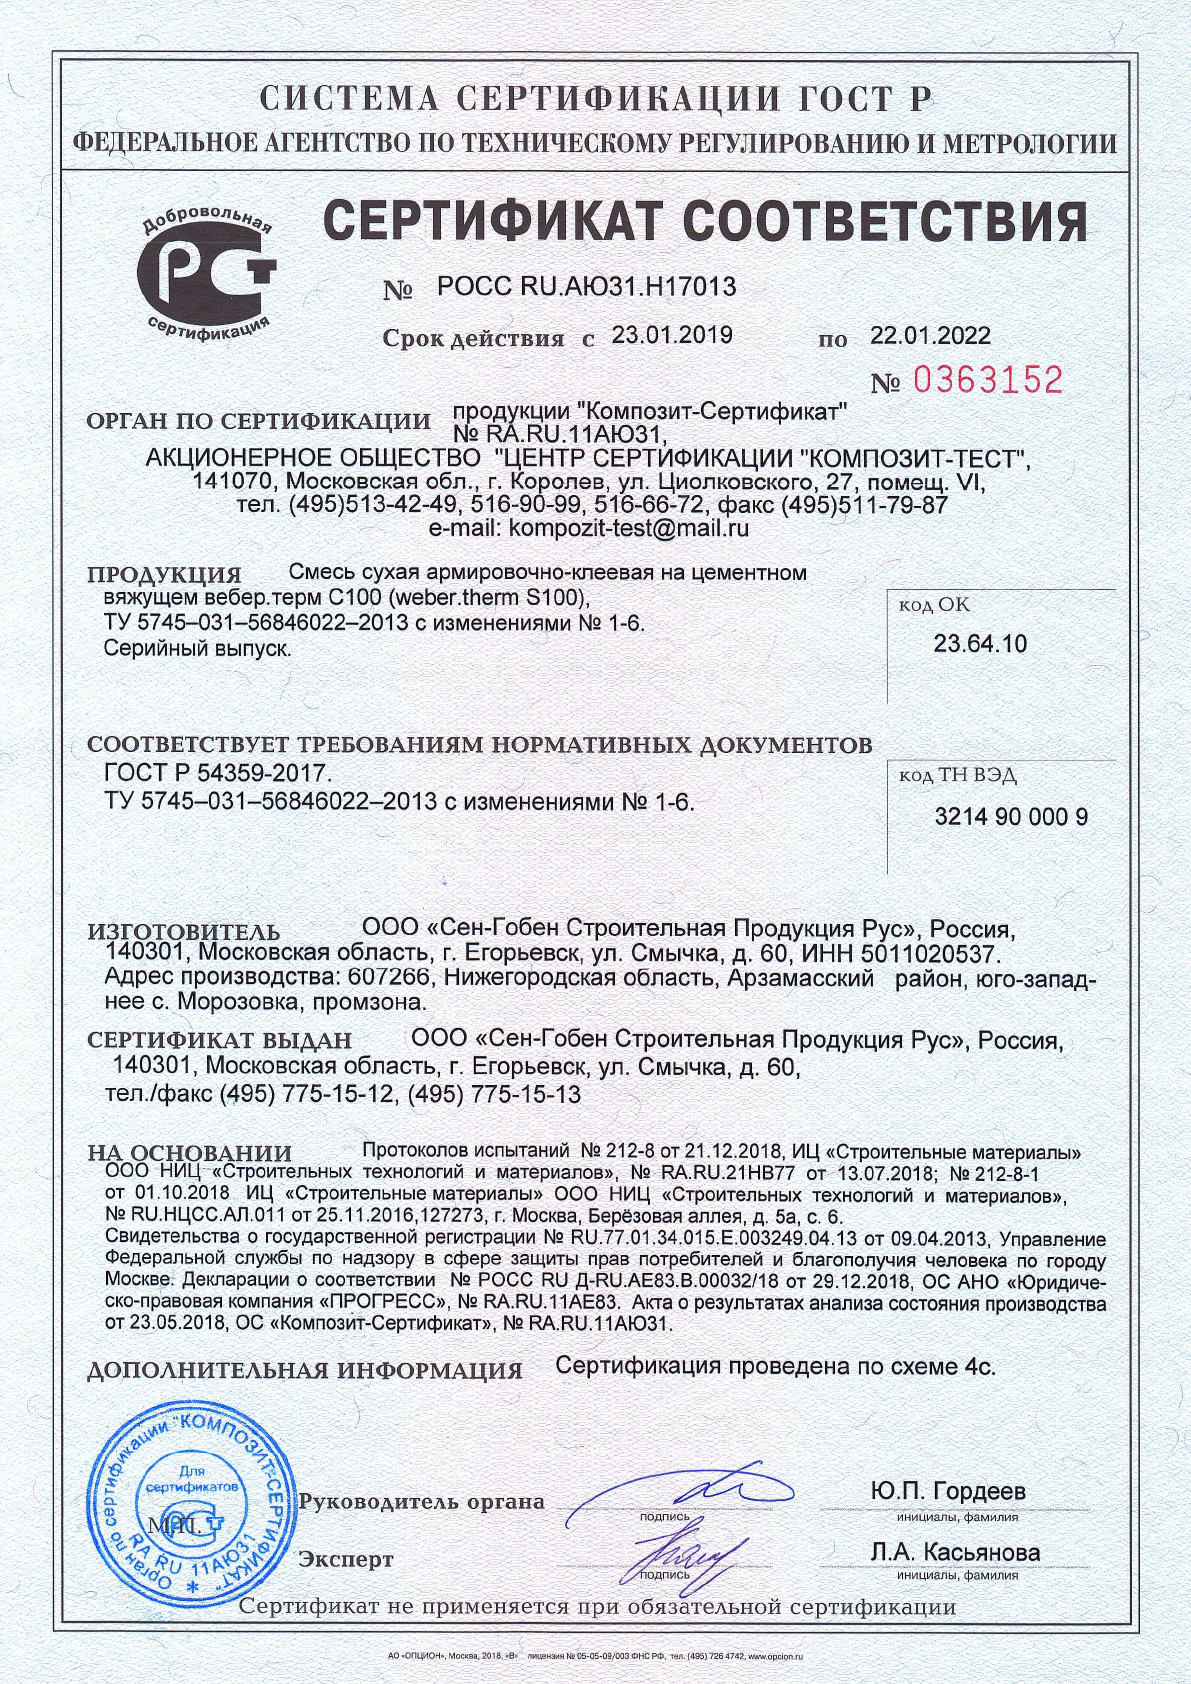 Сертификат cоответствия на смесь сухая строительная на цементном вяжущем вебер.терм С100 срок действия до 22.01.2022